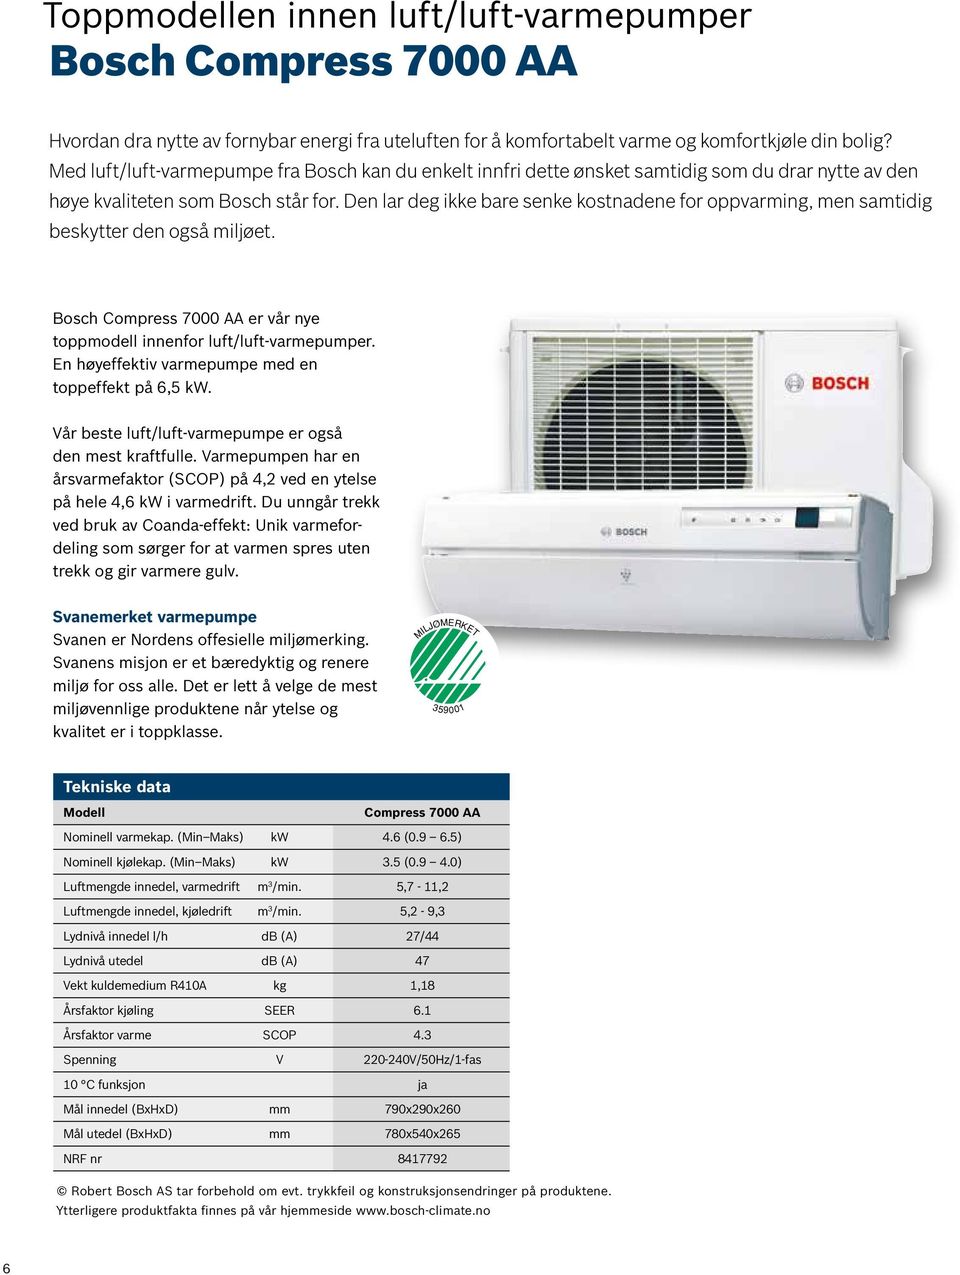 Den lar deg ikke bare senke kostnadene for oppvarming, men samtidig beskytter den også miljøet. Bosch Compress 7000 AA er vår nye toppmodell innenfor luft/luft-varmepumper.